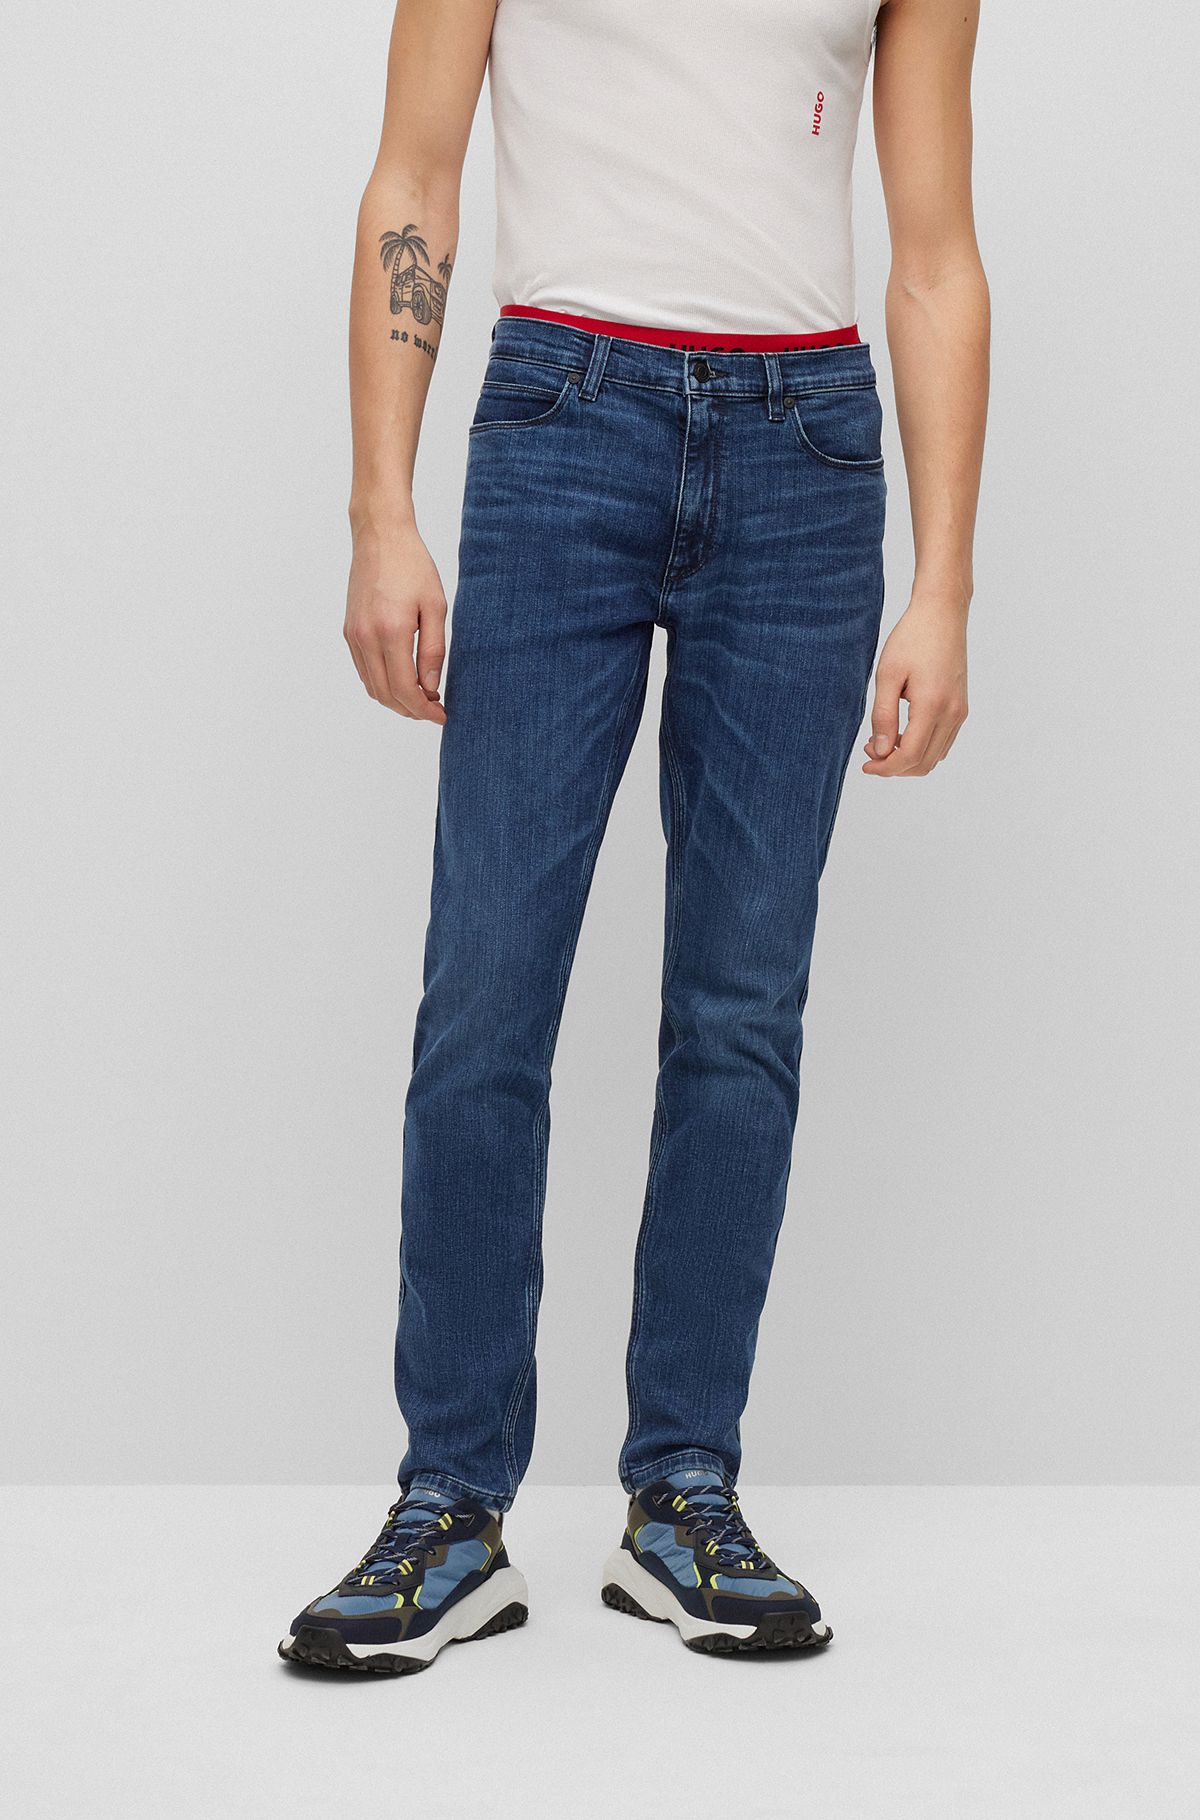 HUGO - Extra-slim-fit jeans in blue super-soft denim